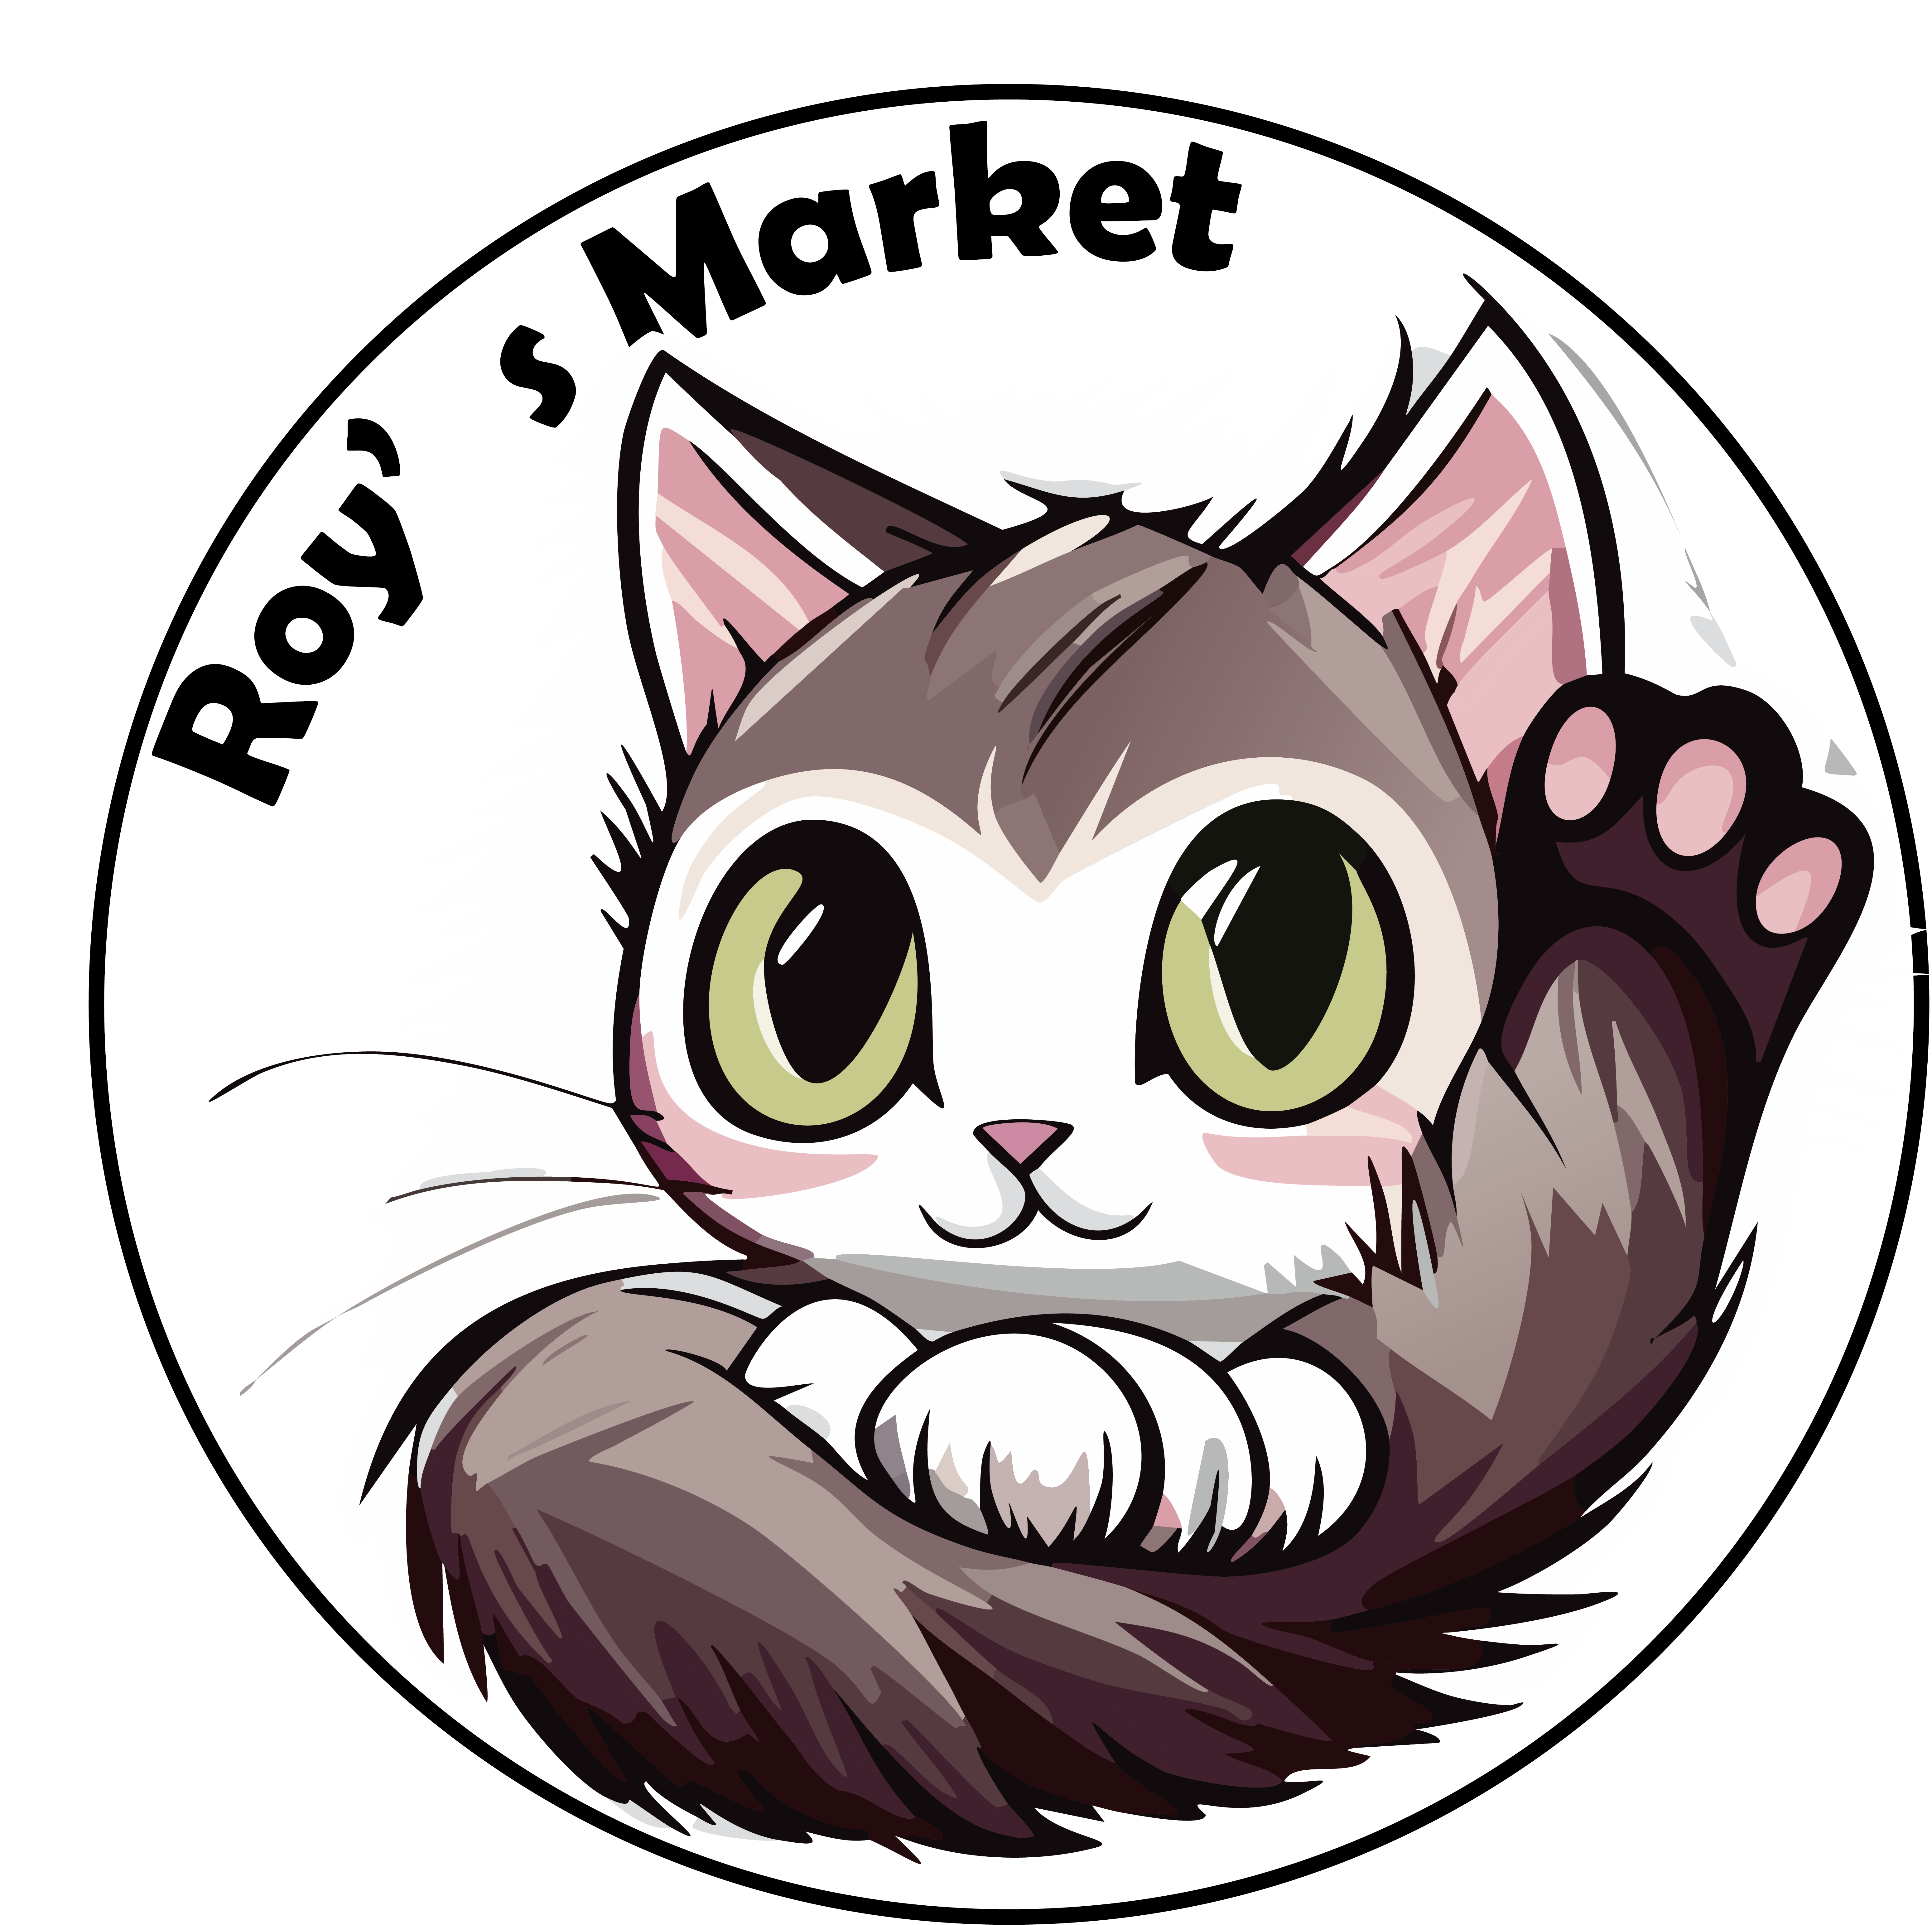 Roy's Marketロゴ